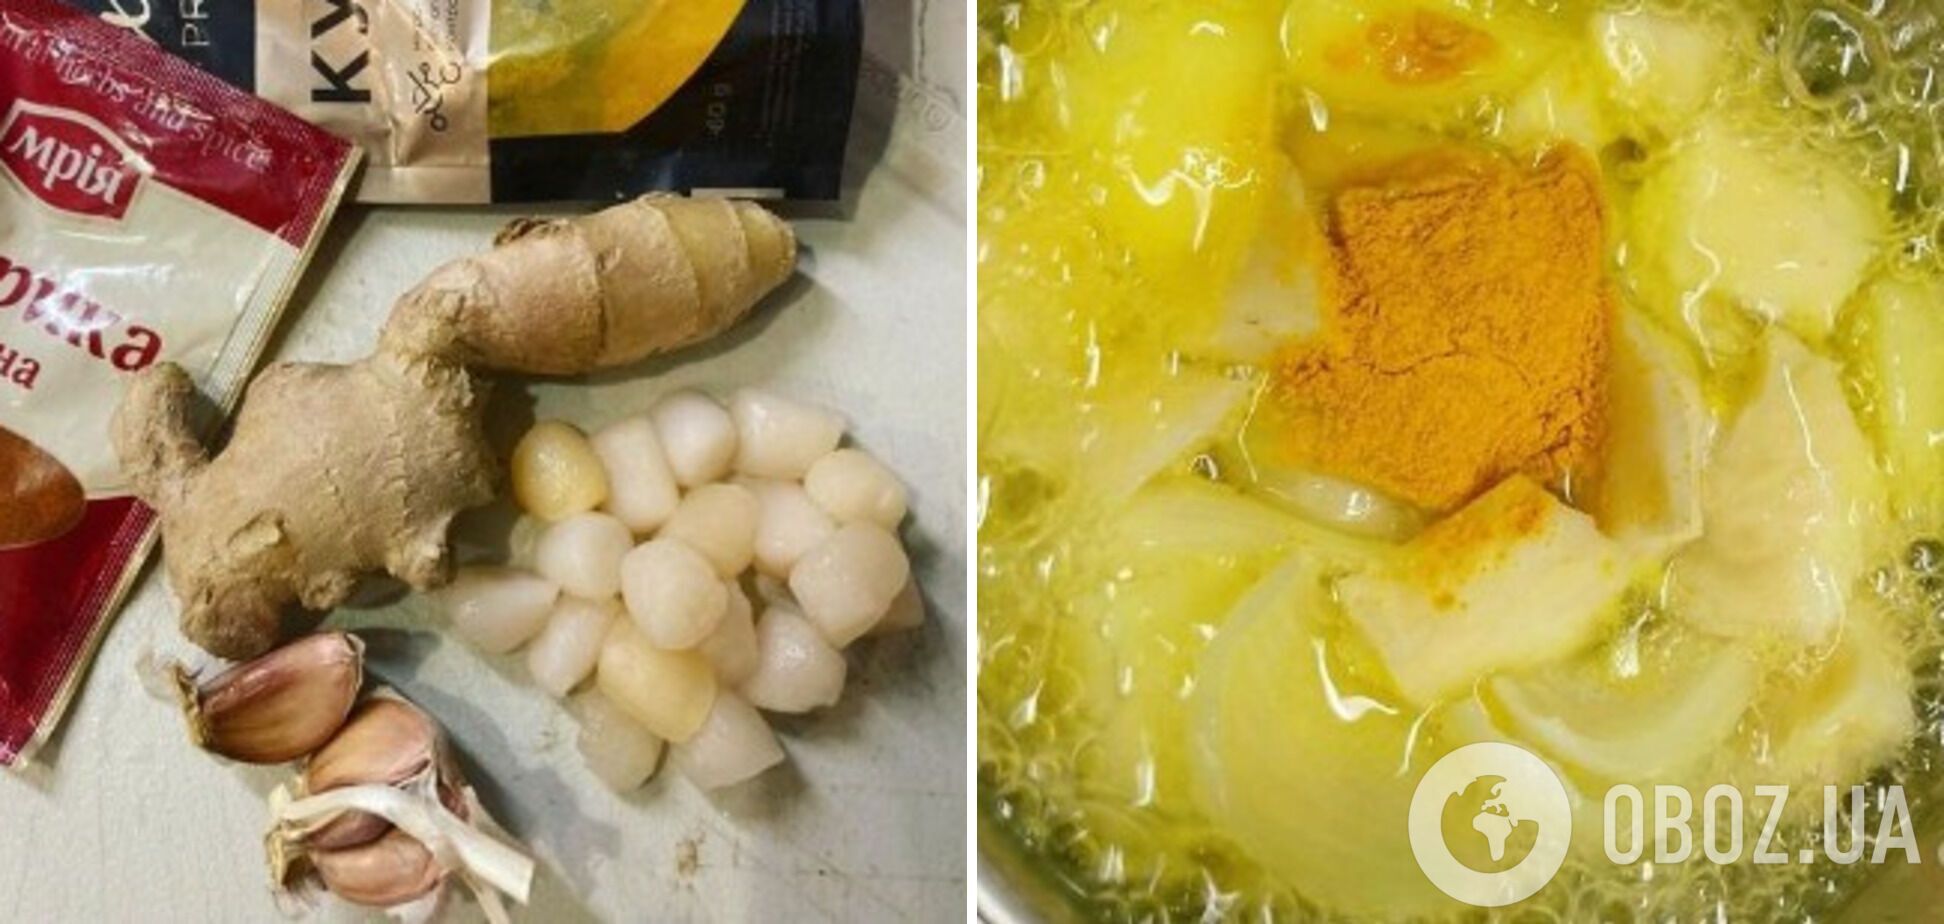 Ингредиенты и процесс варки картофеля